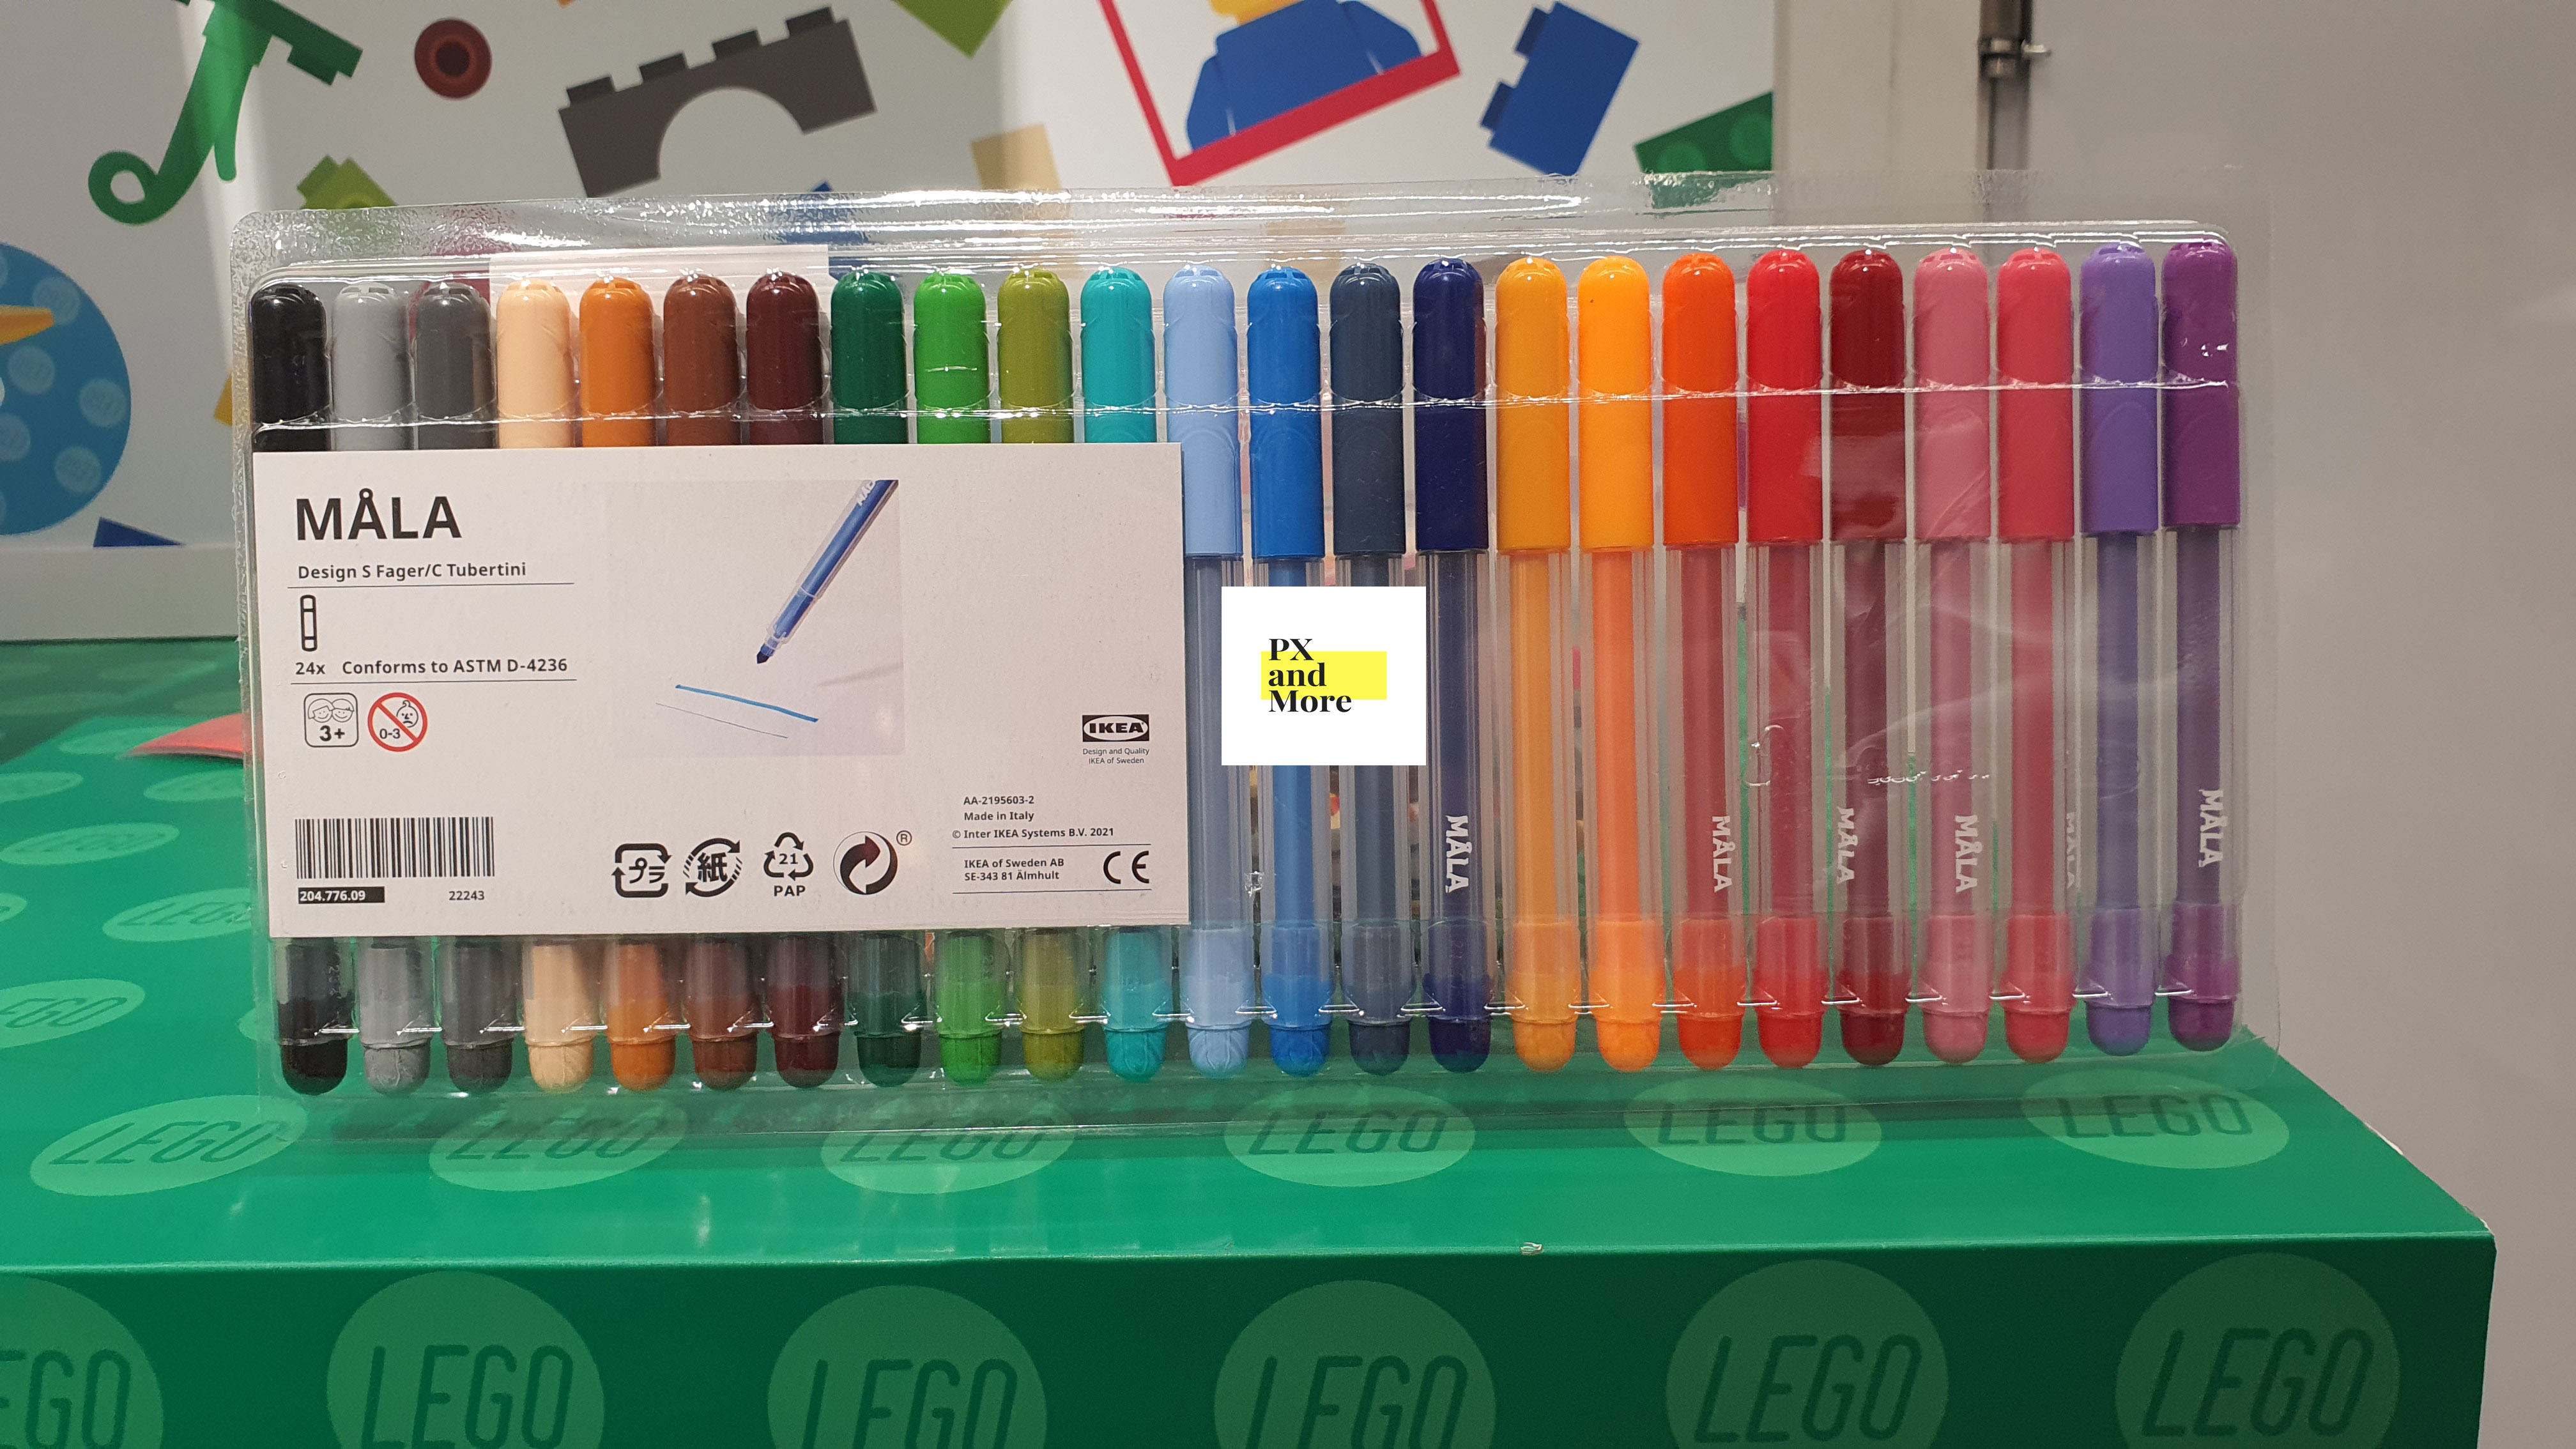 MÅLA Felt-tip pen, mixed colors - IKEA